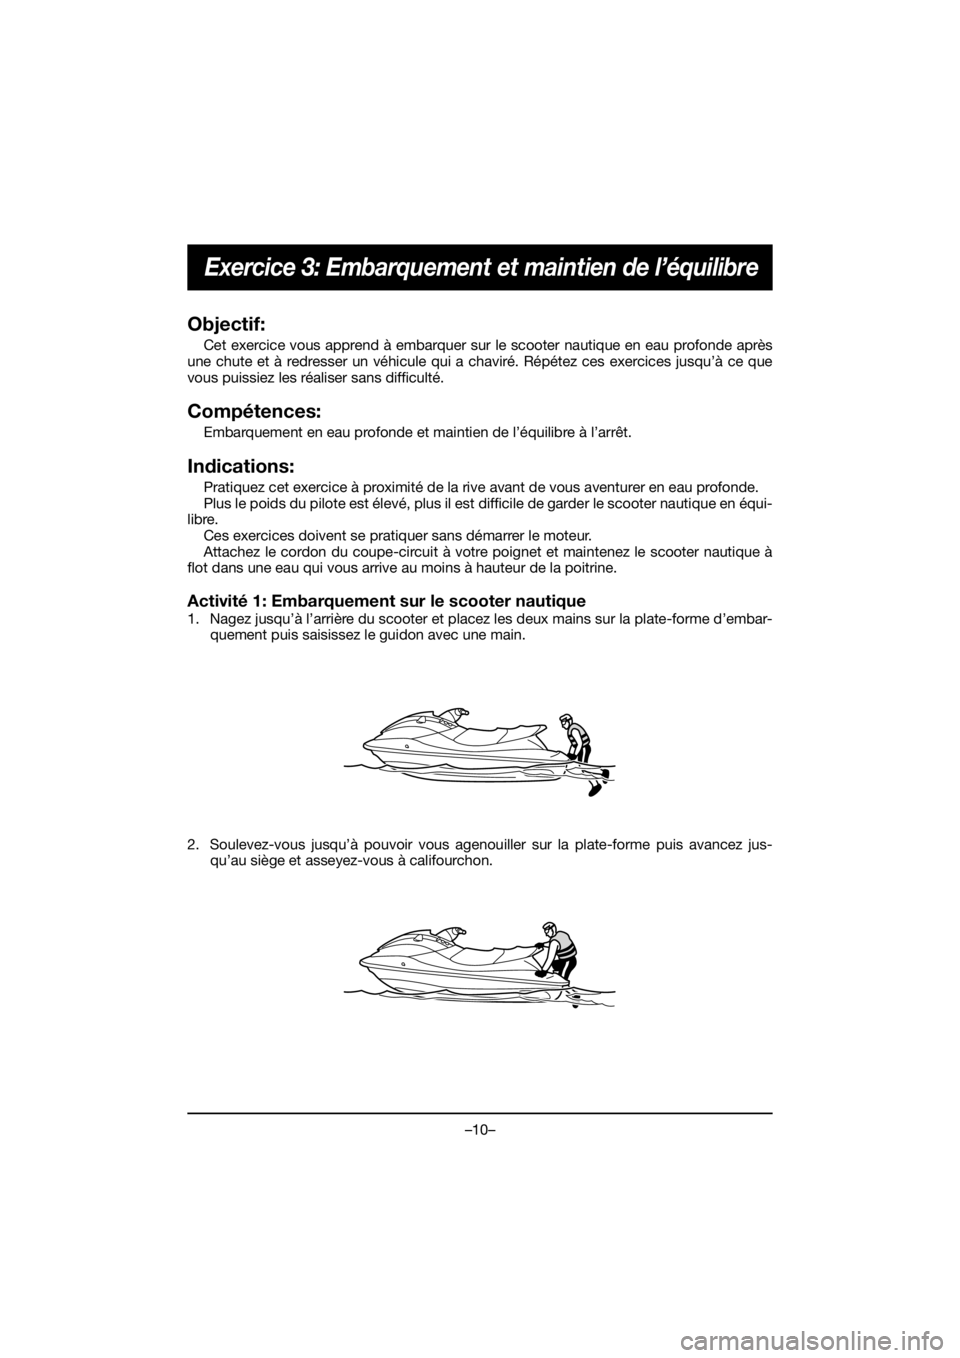 YAMAHA EX 2021  Manuale duso (in Italian) –10–
Exercice 3: Embarquement et maintien de l’équilibre
Objectif:
Cet exercice vous apprend à embarquer sur le scooter nautique en eau profonde après
une chute et à redresser un véhicule q